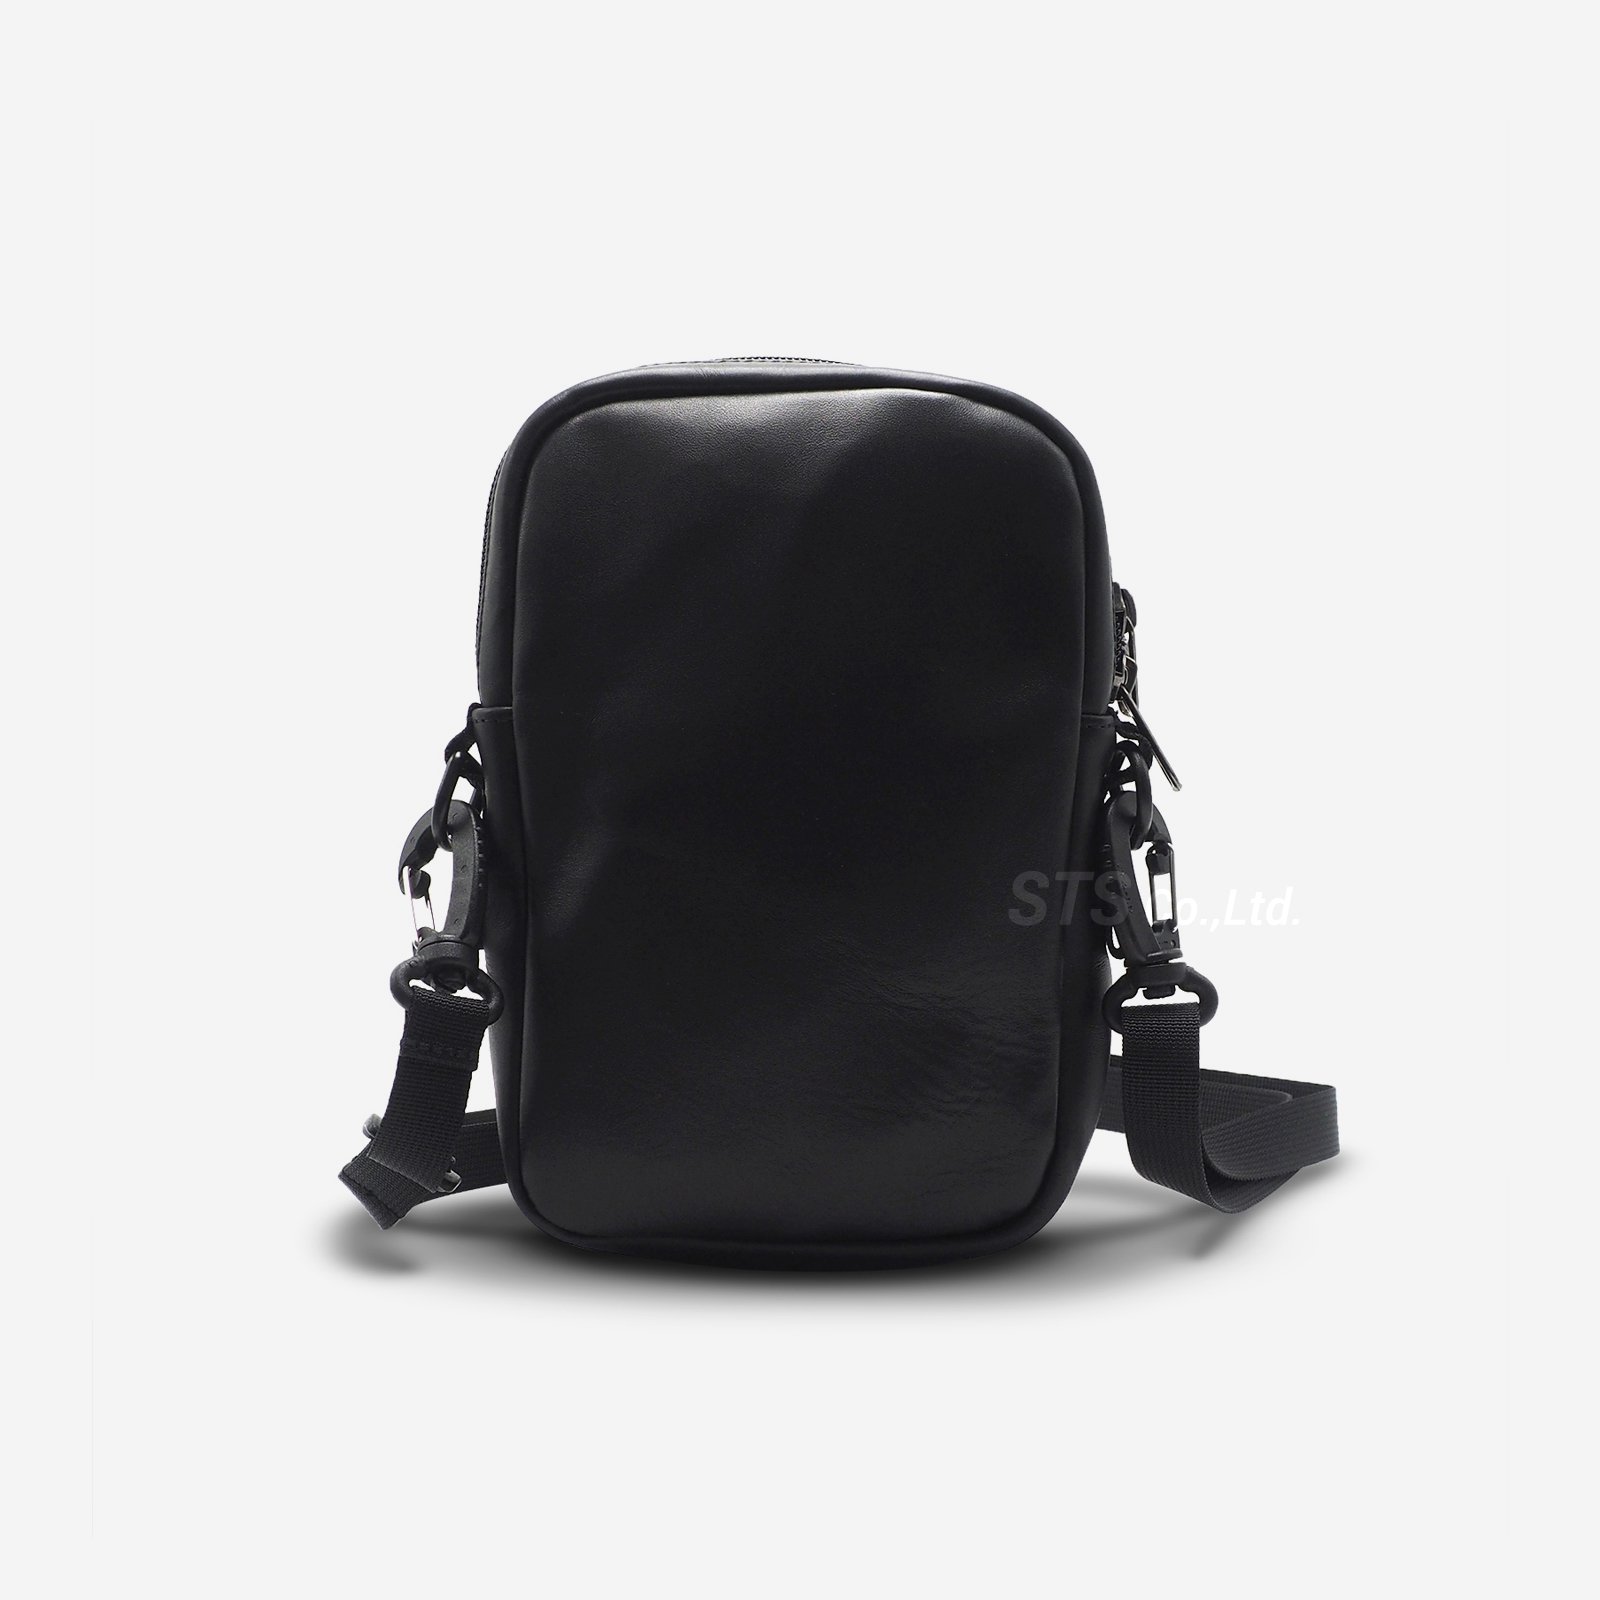 Supreme/TNF  Leather Shoulder Bag  black